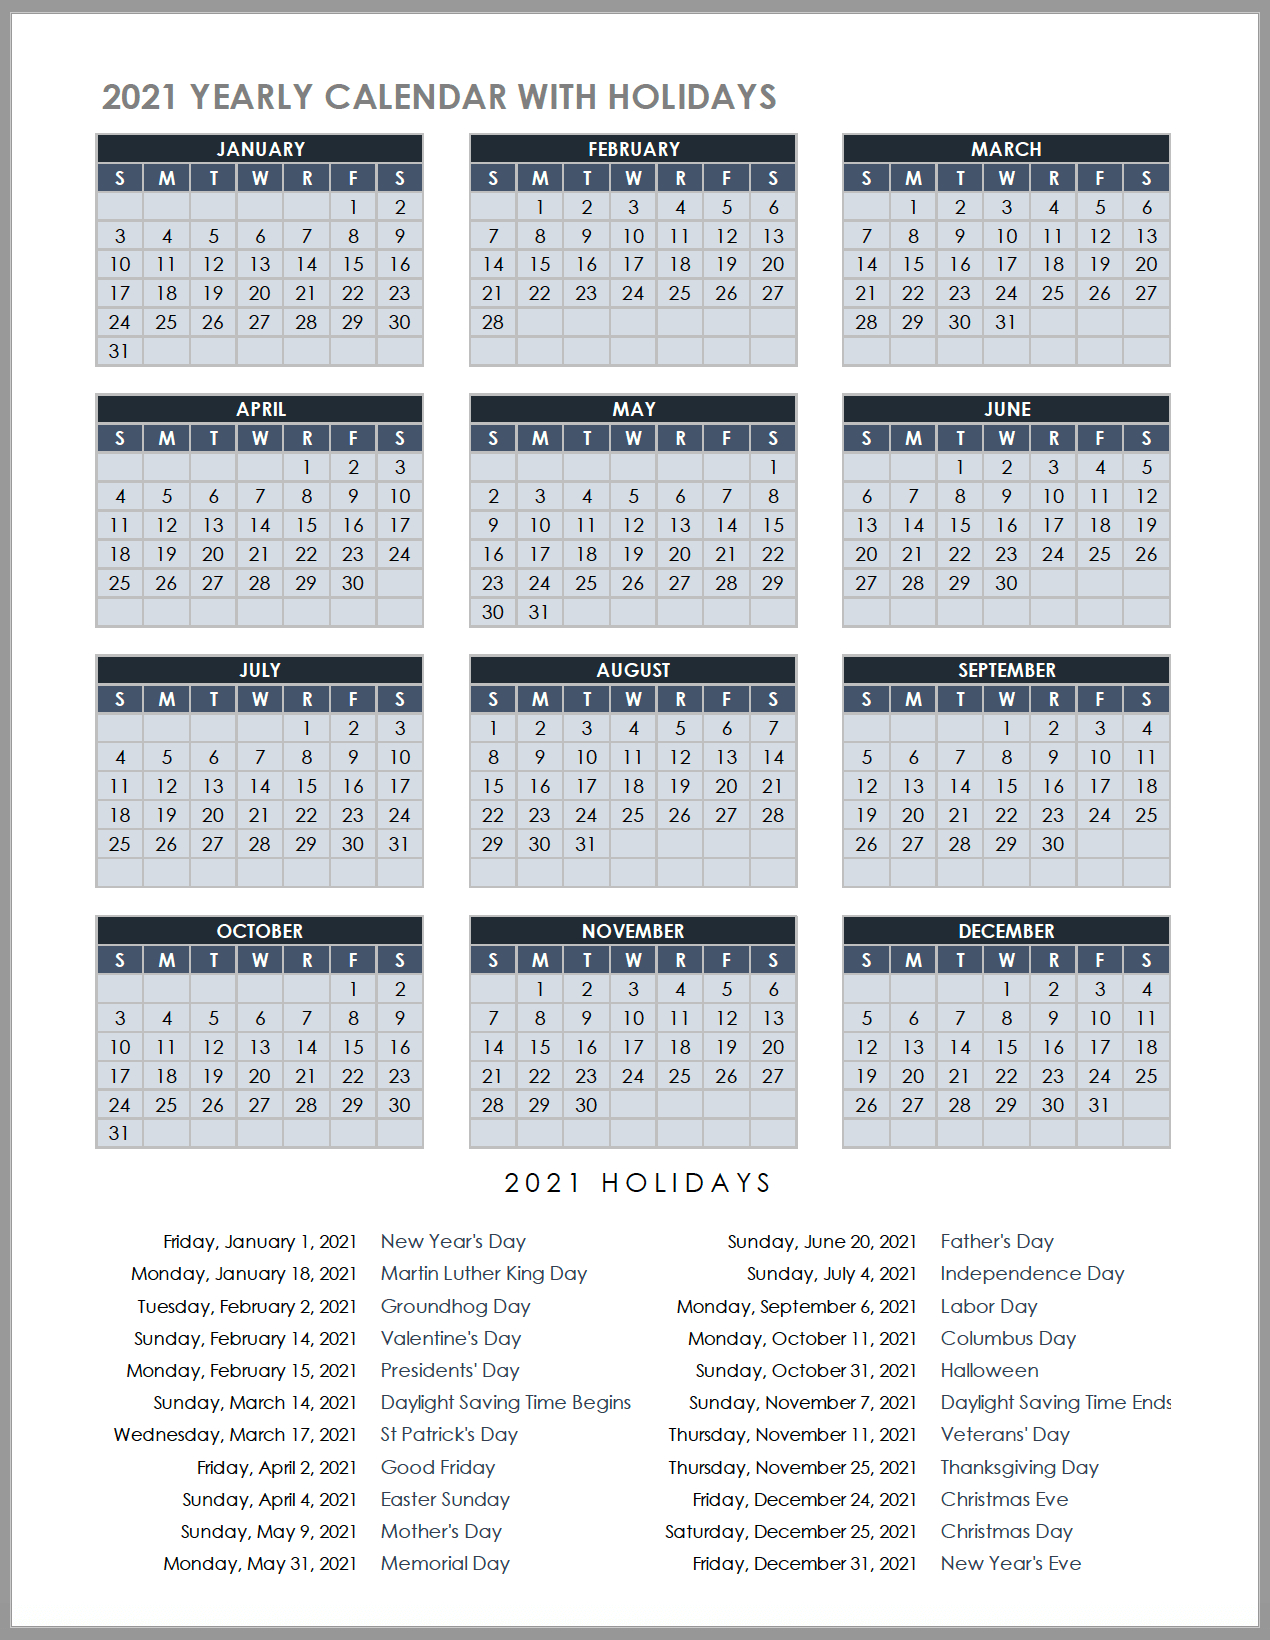 2022 Employee Calendar - July Calendar 2022-Next Year Holiday Calendar 2022